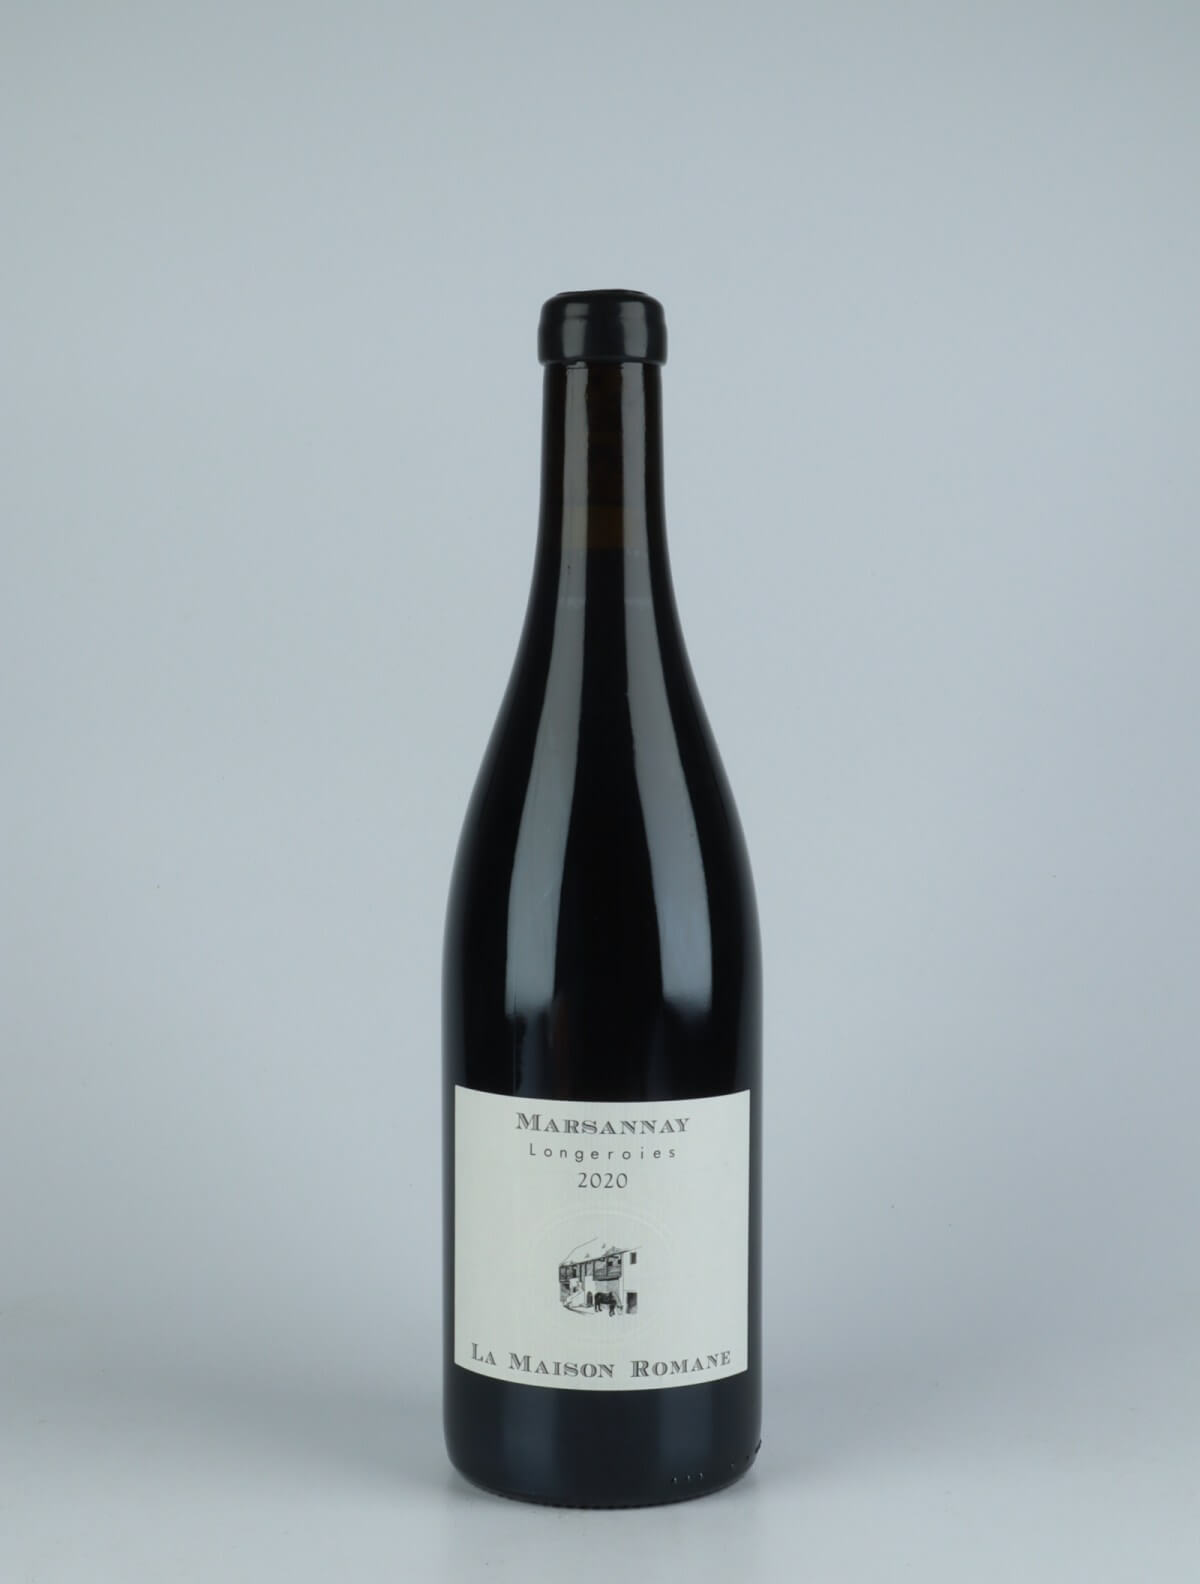 A bottle 2020 Marsannay - Longeroies Red wine from La Maison Romane, Burgundy in France